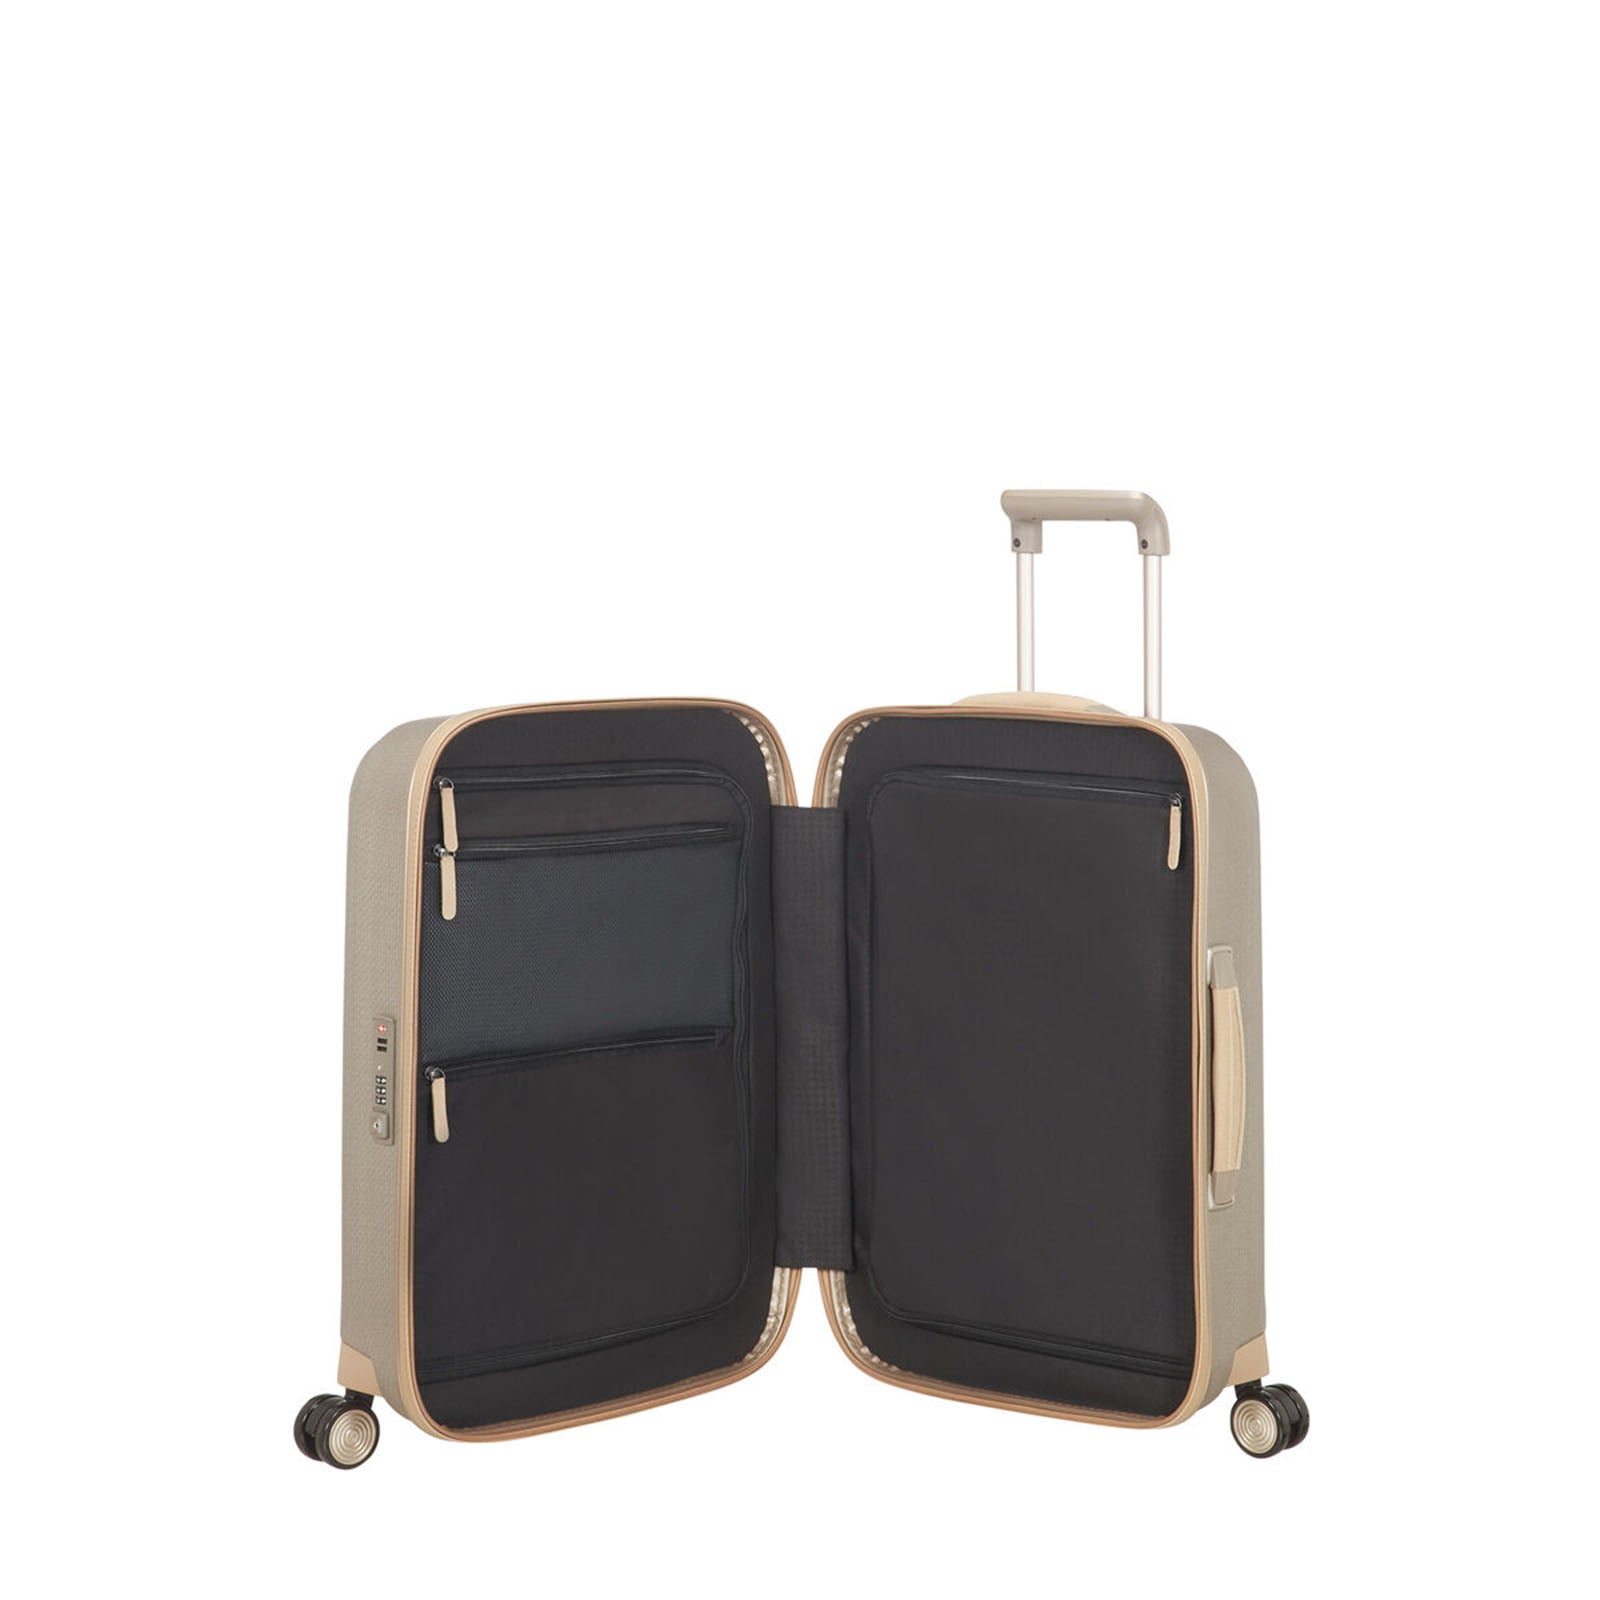 Samsonite-Lite-Cube-Prime-55cm-Suitcase-Ivory-Gold-Open